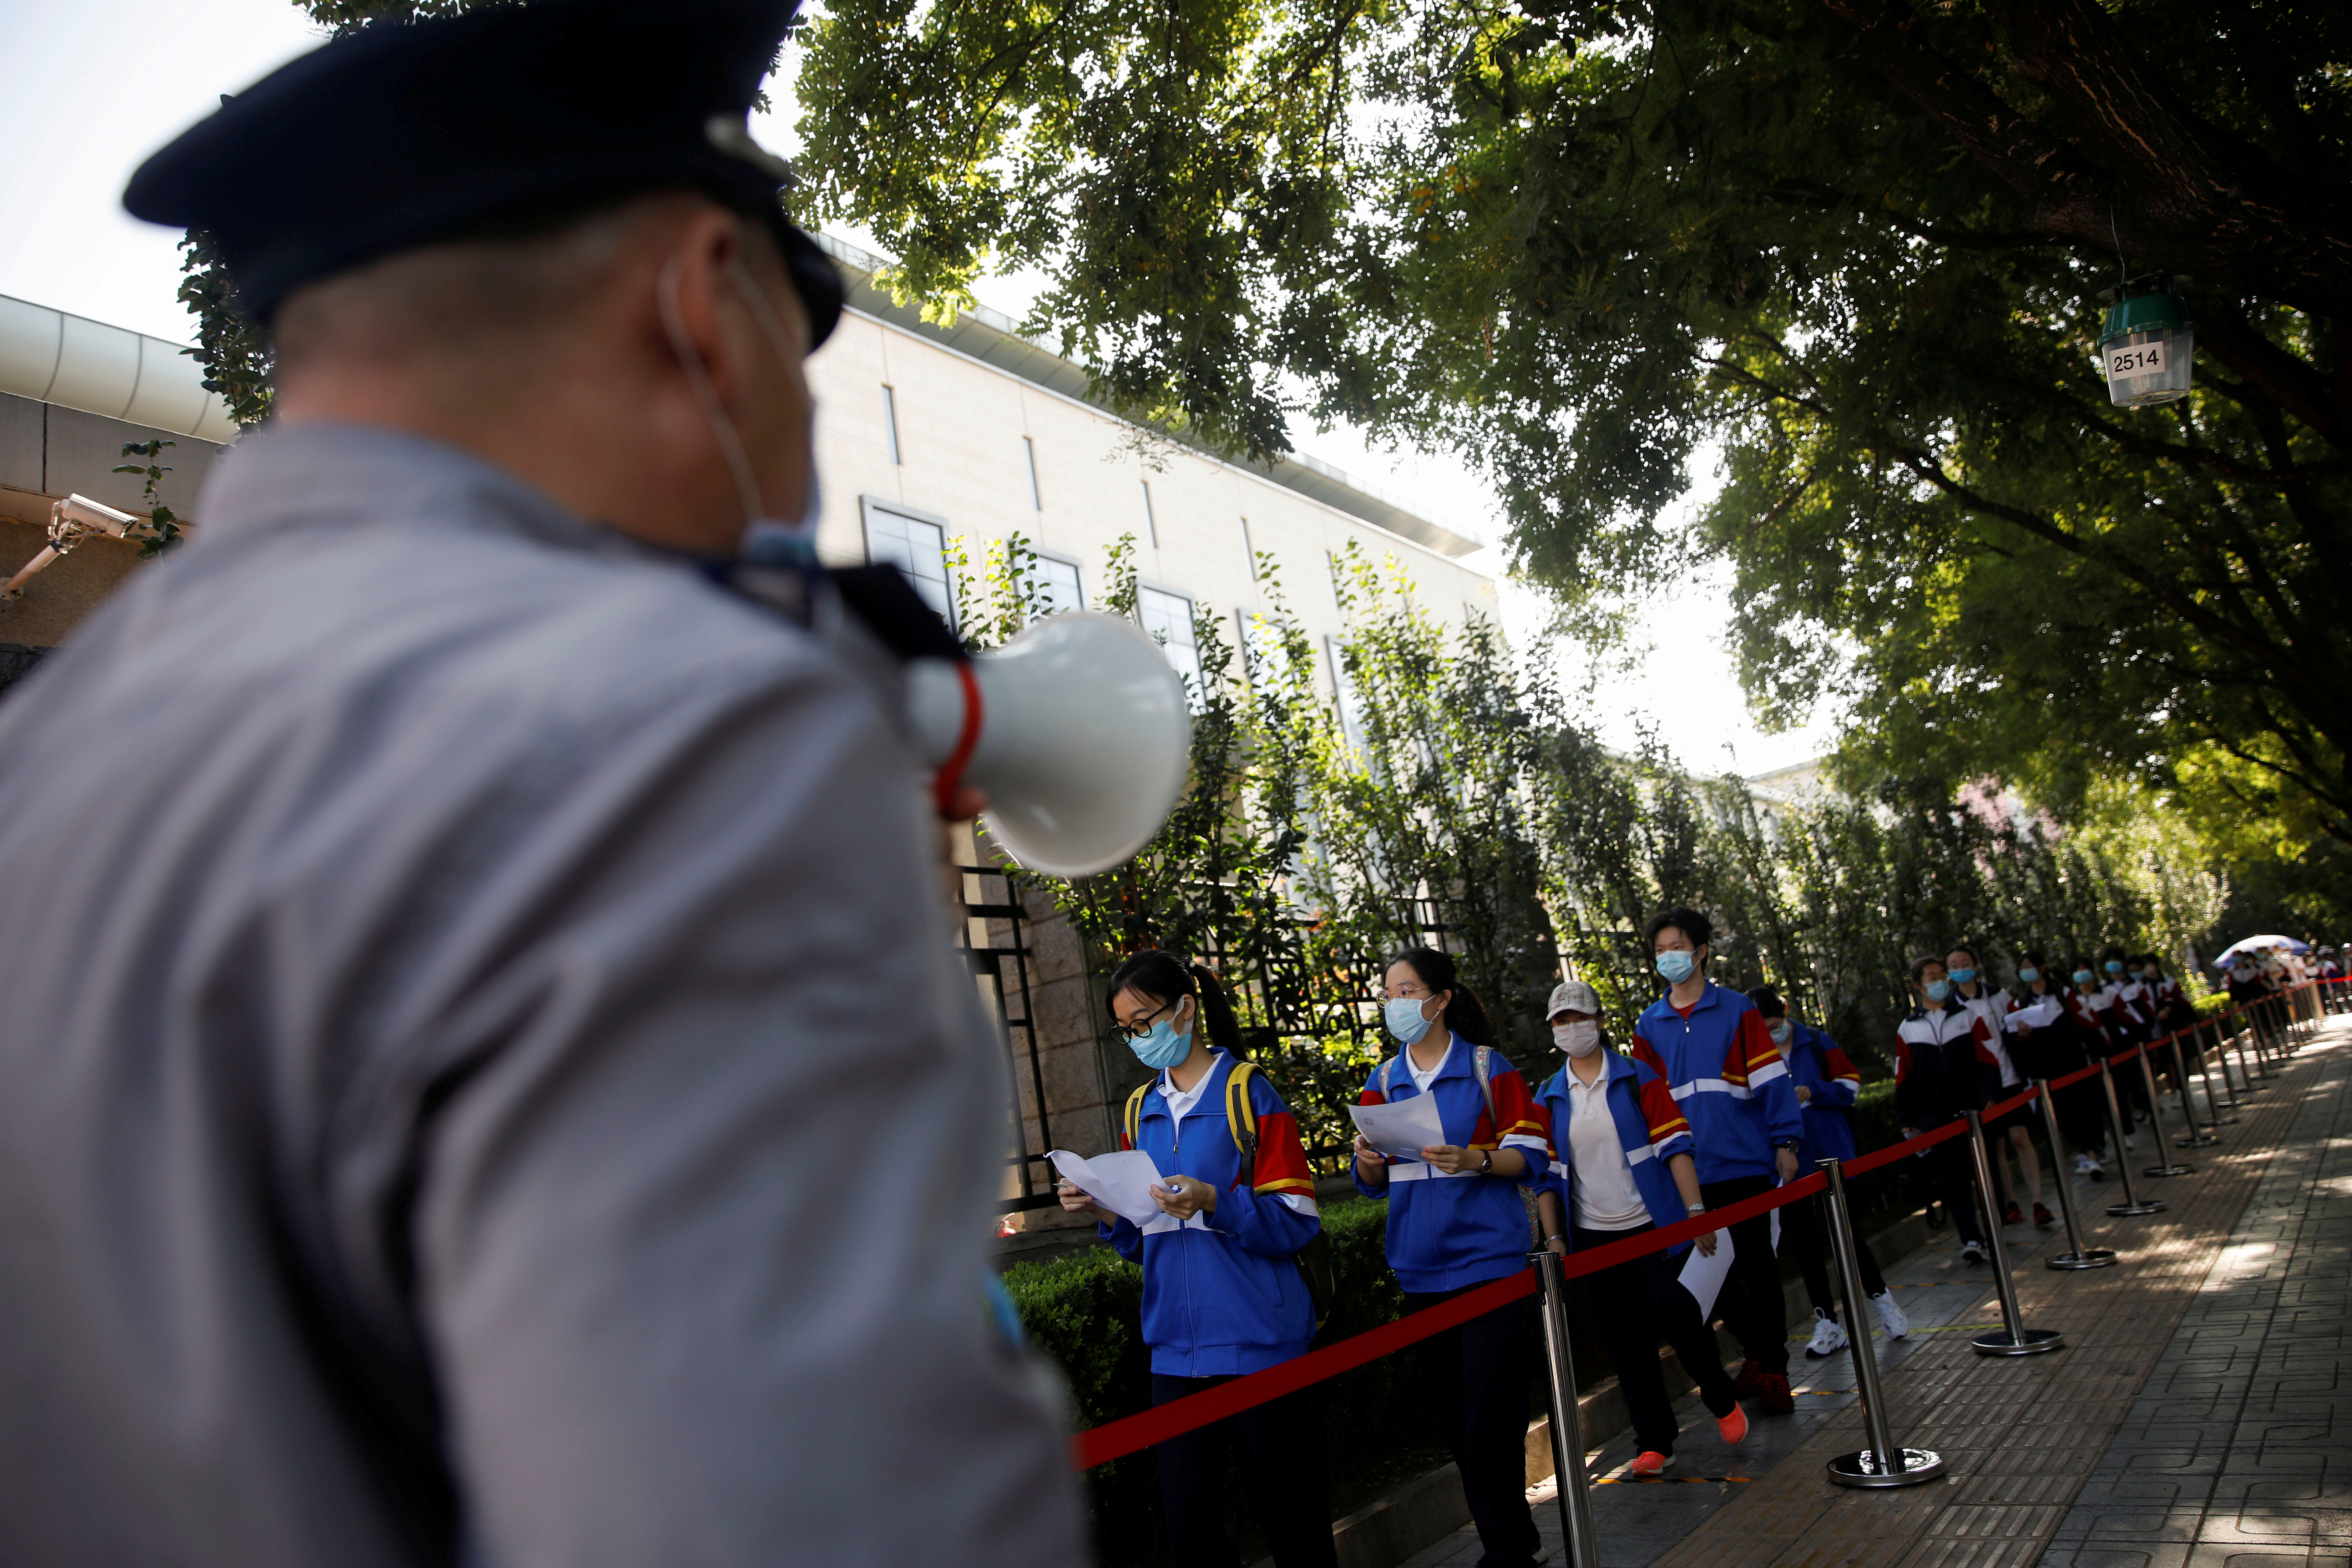 Estudiantes hacen fila para ingresar a la escuela en la que realizarán el examen de acceso a la universidad o "gaokao" en julio en Beijing (REUTERS/Carlos Garcia Rawlins)